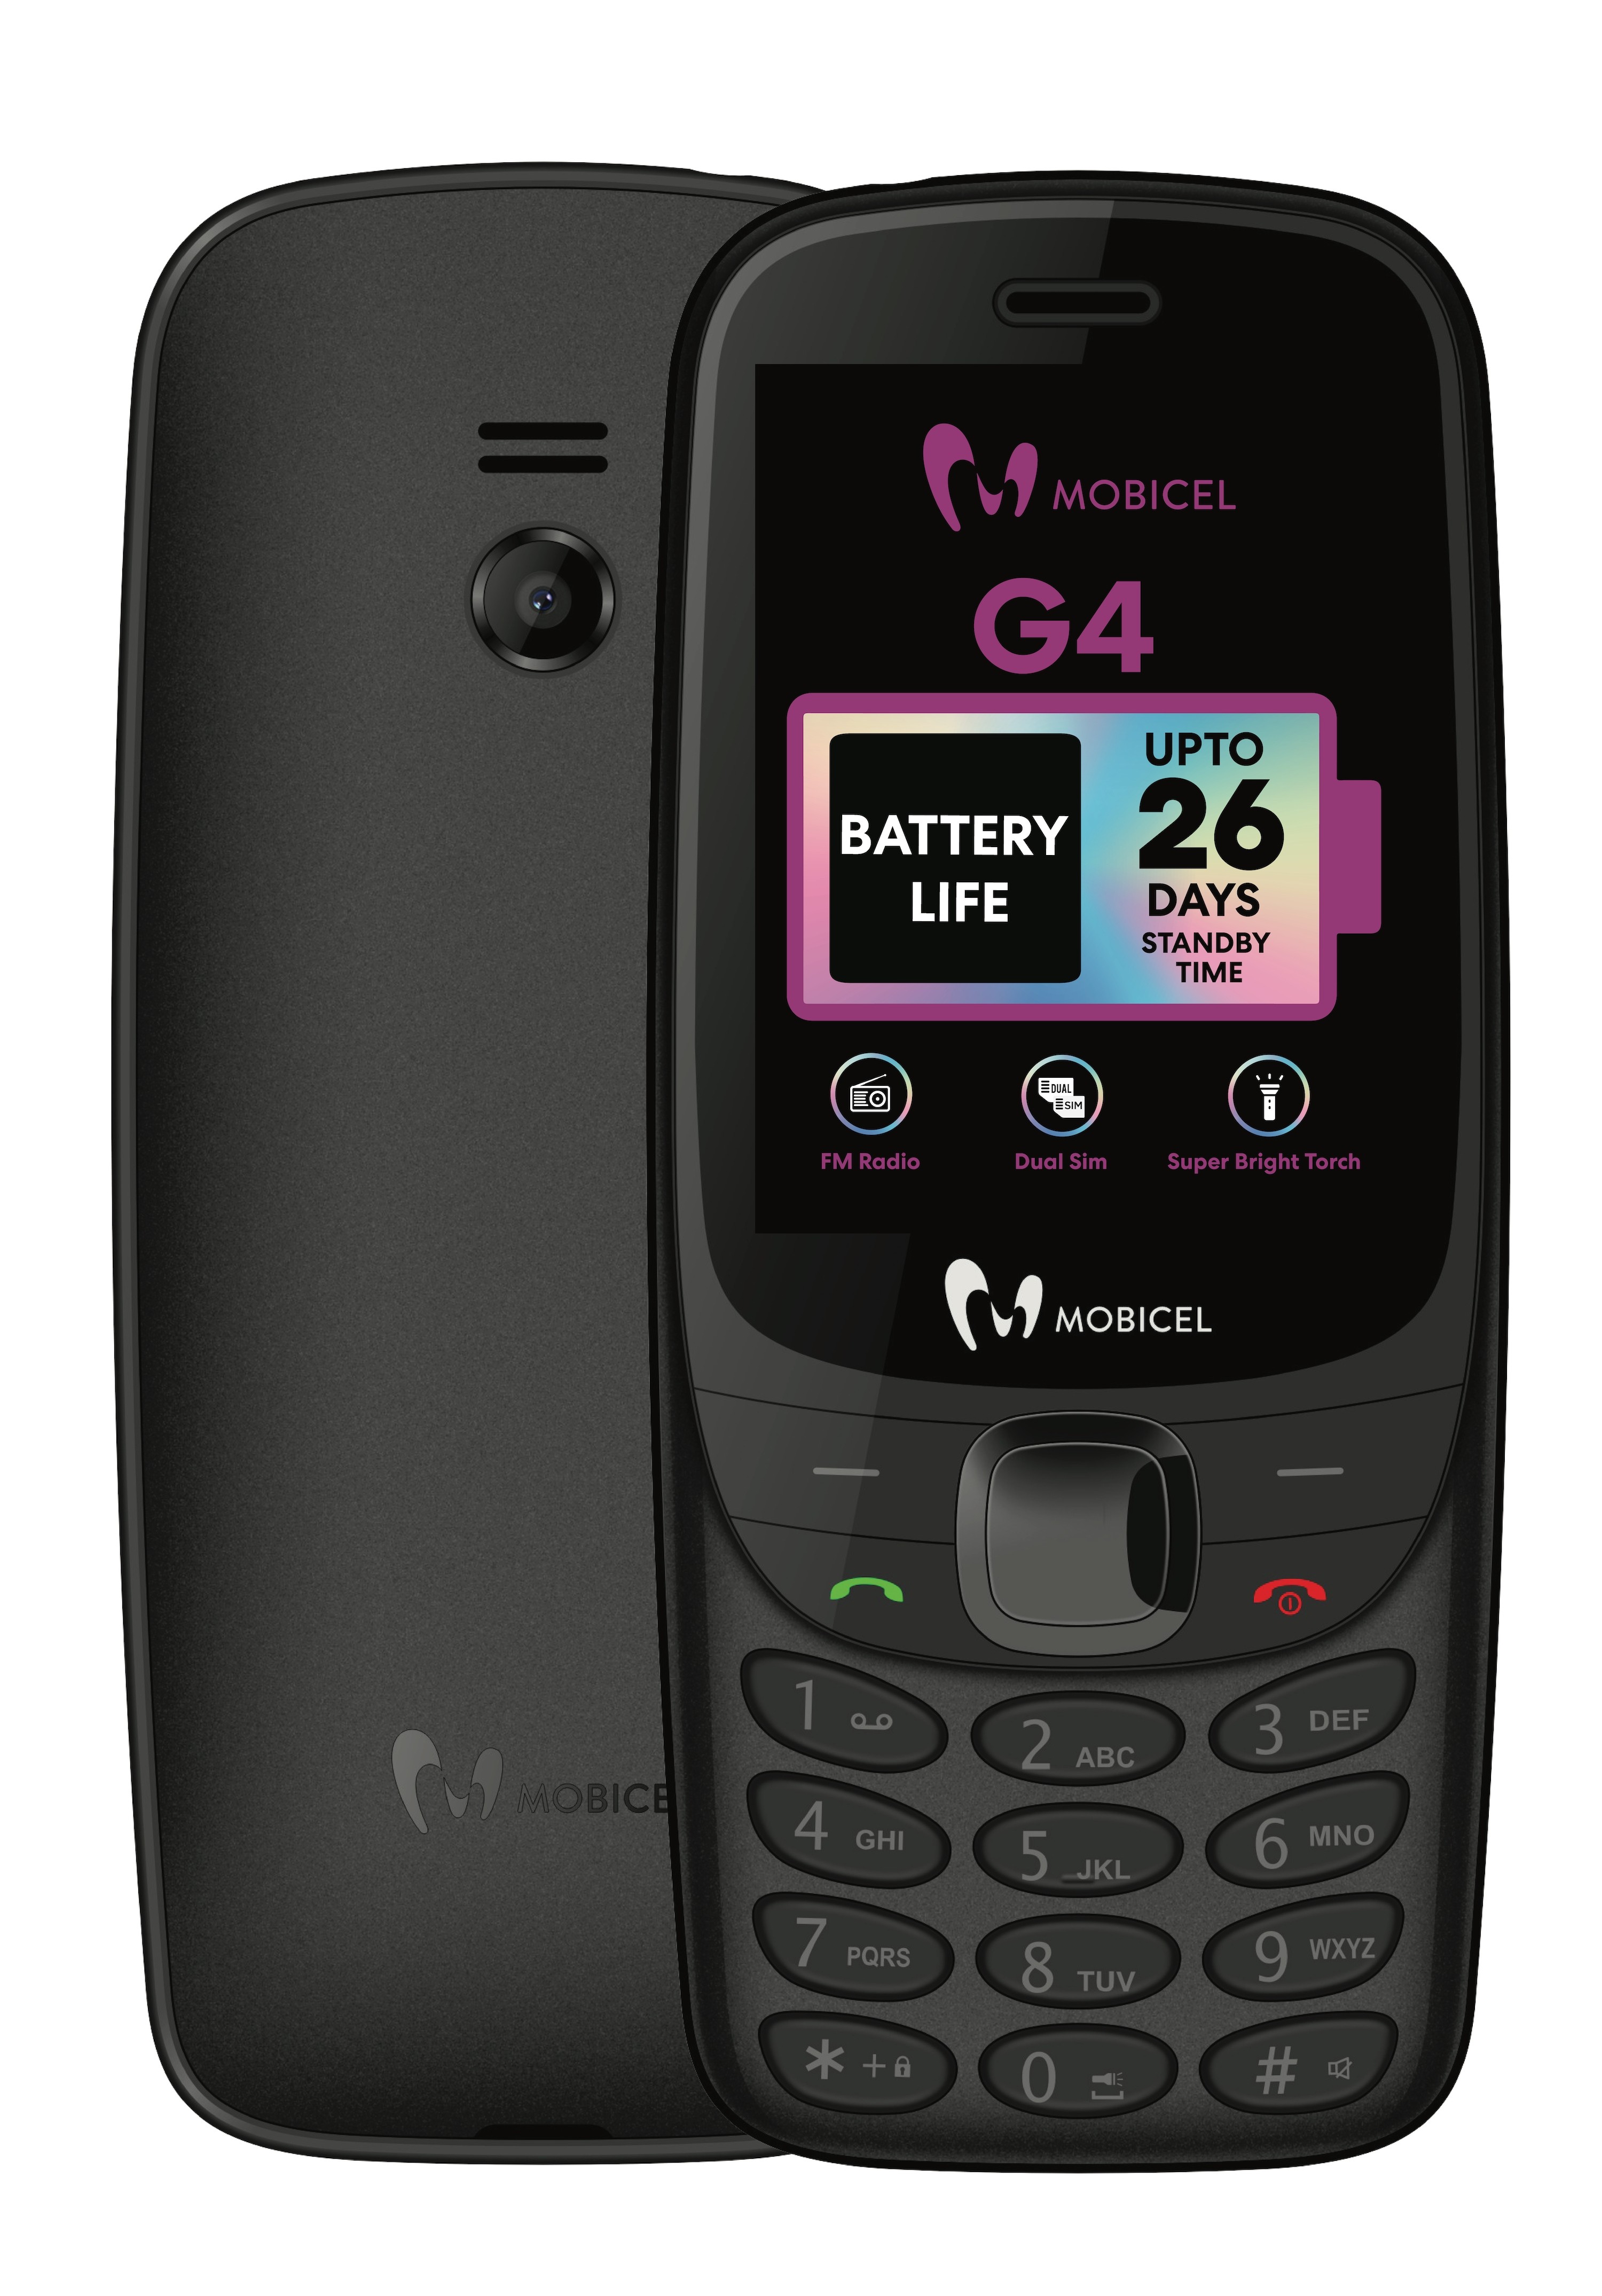 Mobicel G4 (Vodacom)